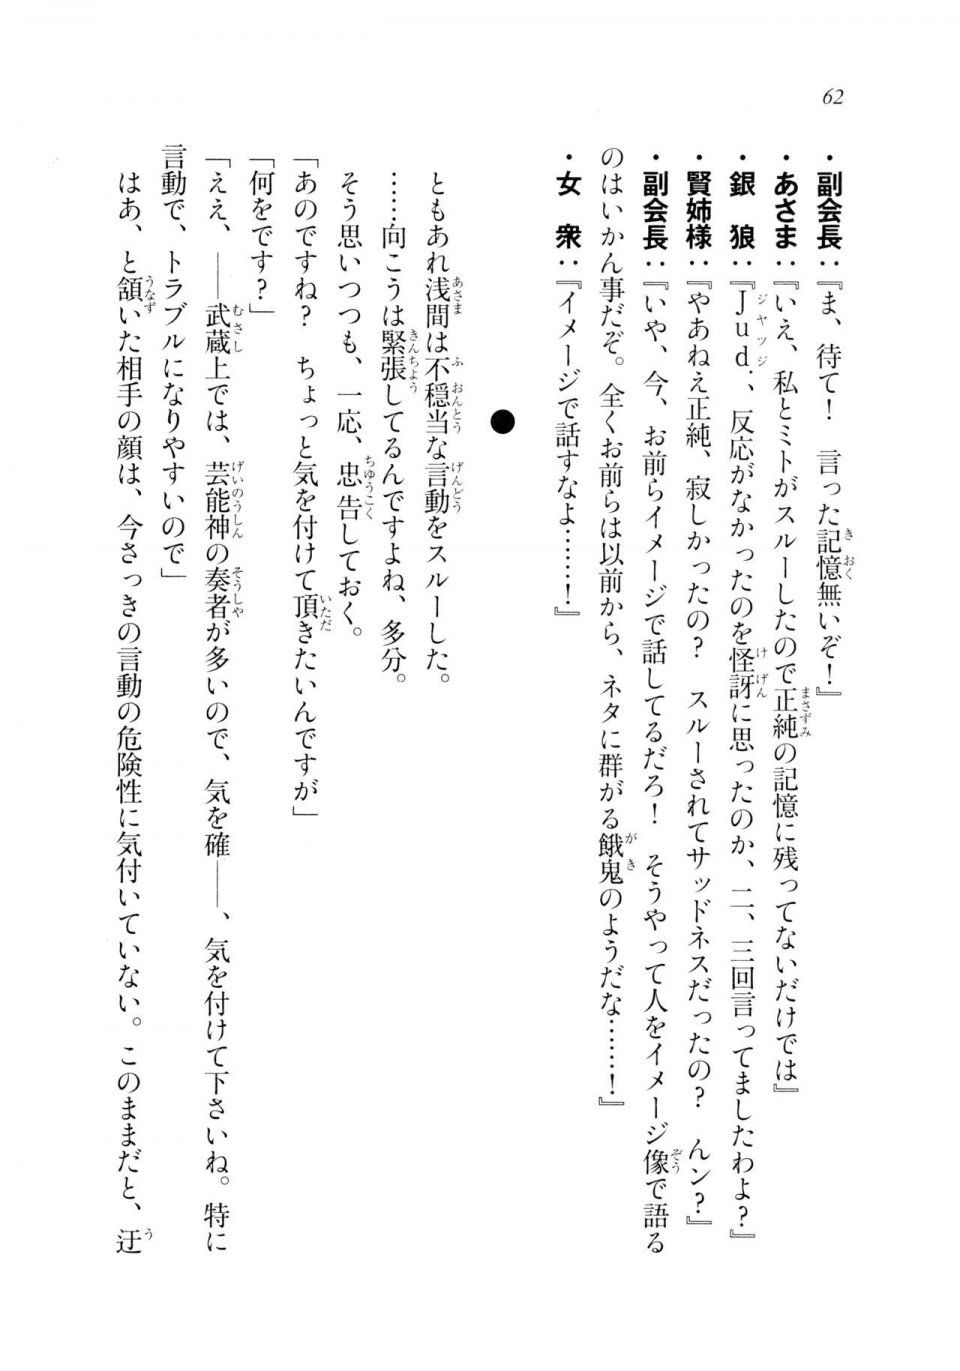 Kyoukai Senjou no Horizon LN Sidestory Vol 2 - Photo #60